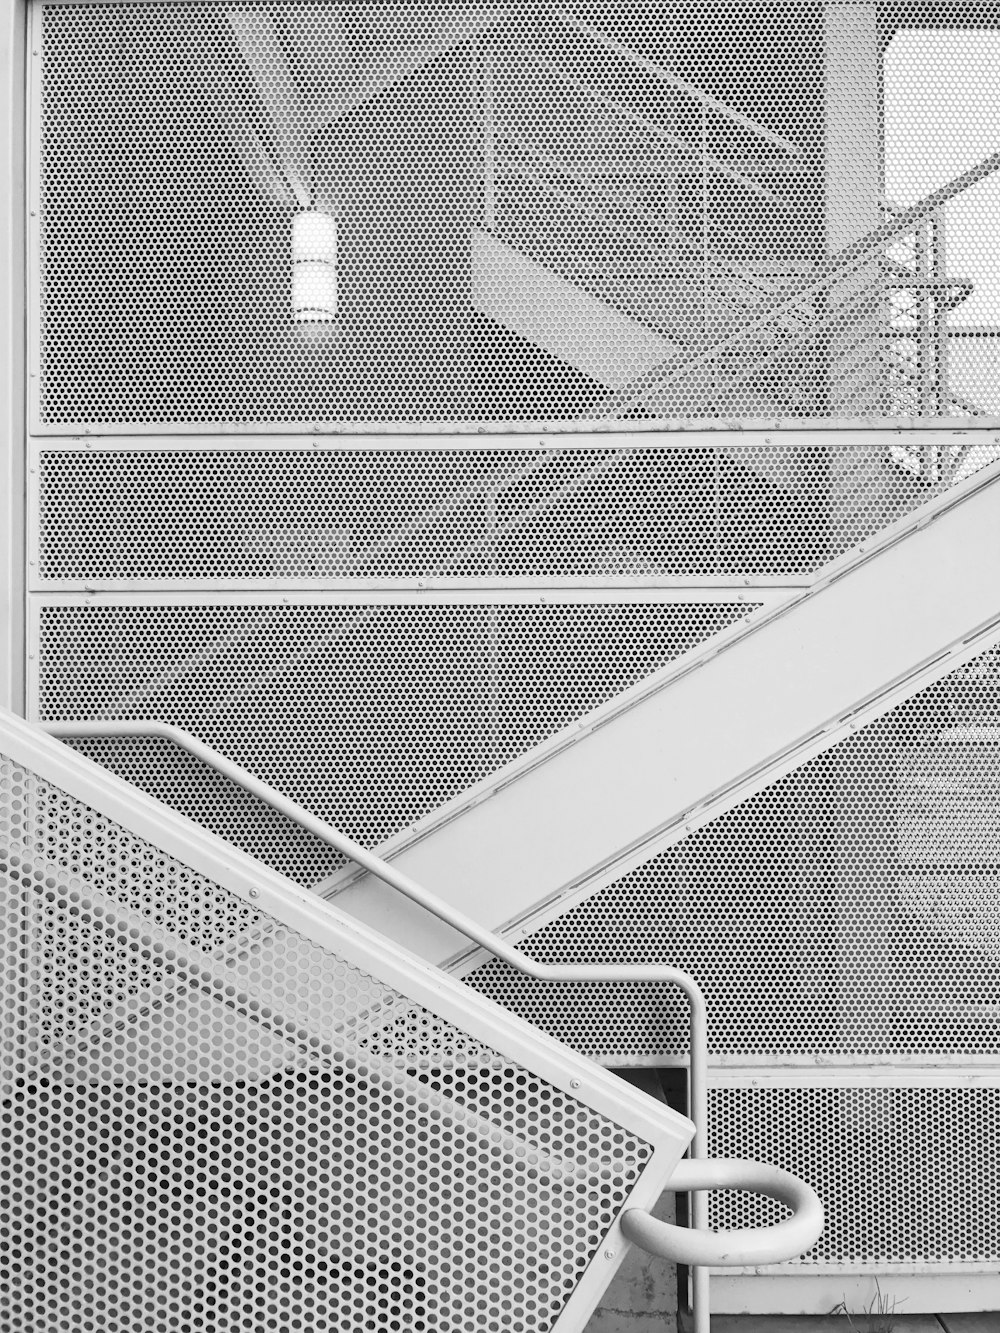 Escada de metal branco durante o dia